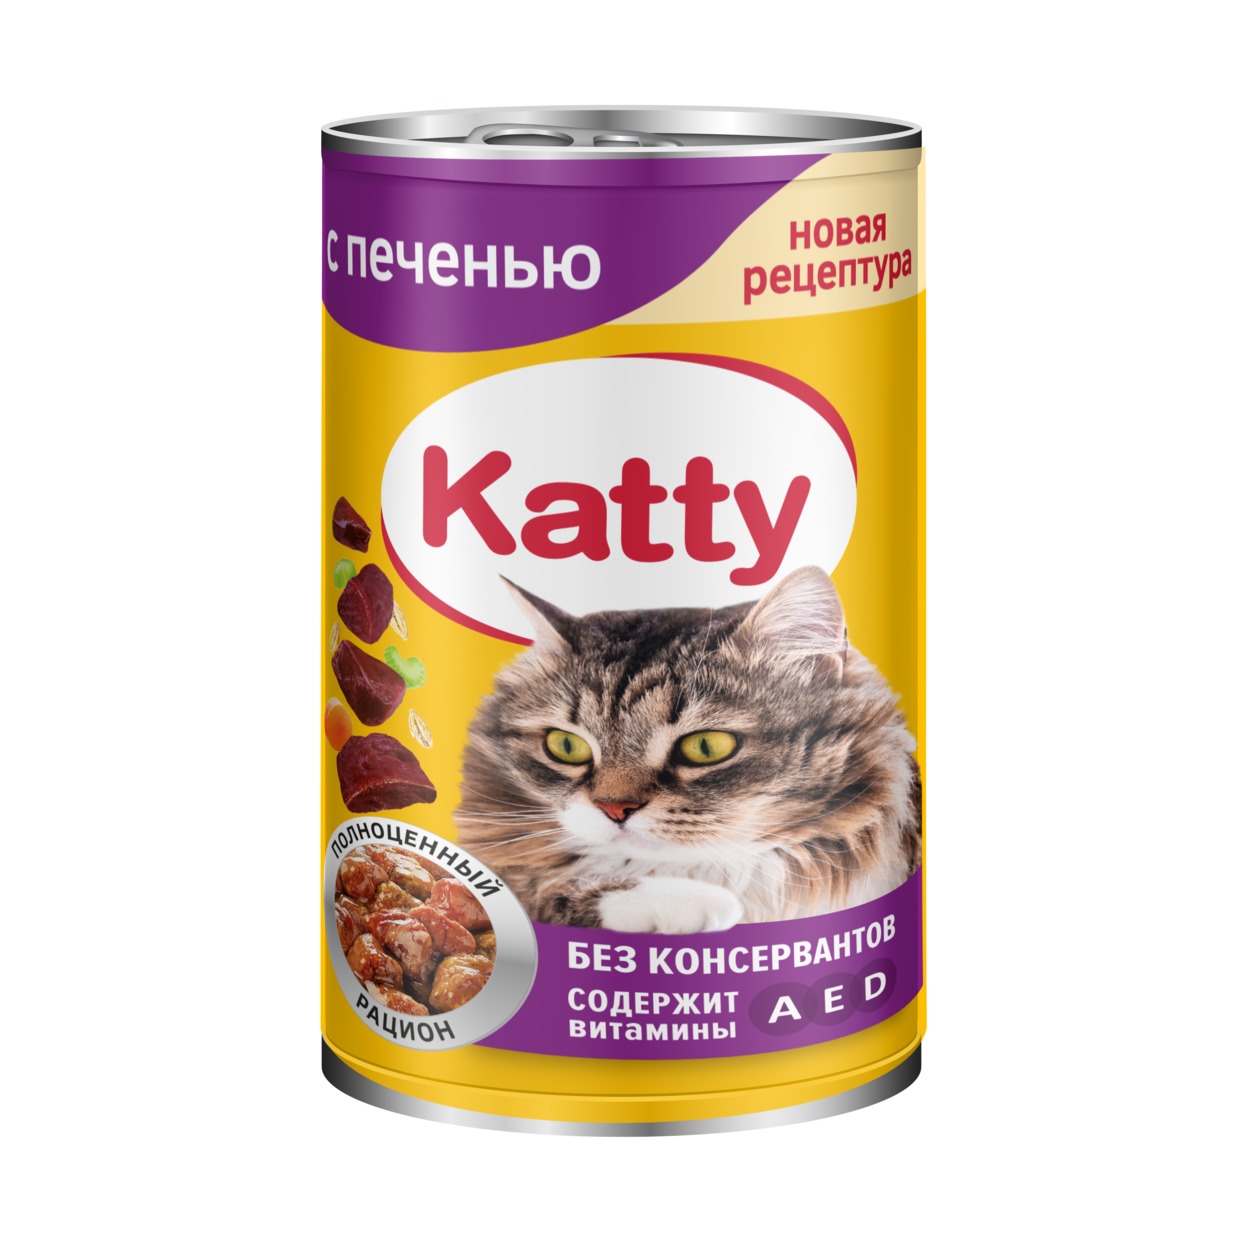 Katty Корм консервированный полнорационный для кошек с печенью в соусе, ж/б 415 гр. по акции в Пятерочке